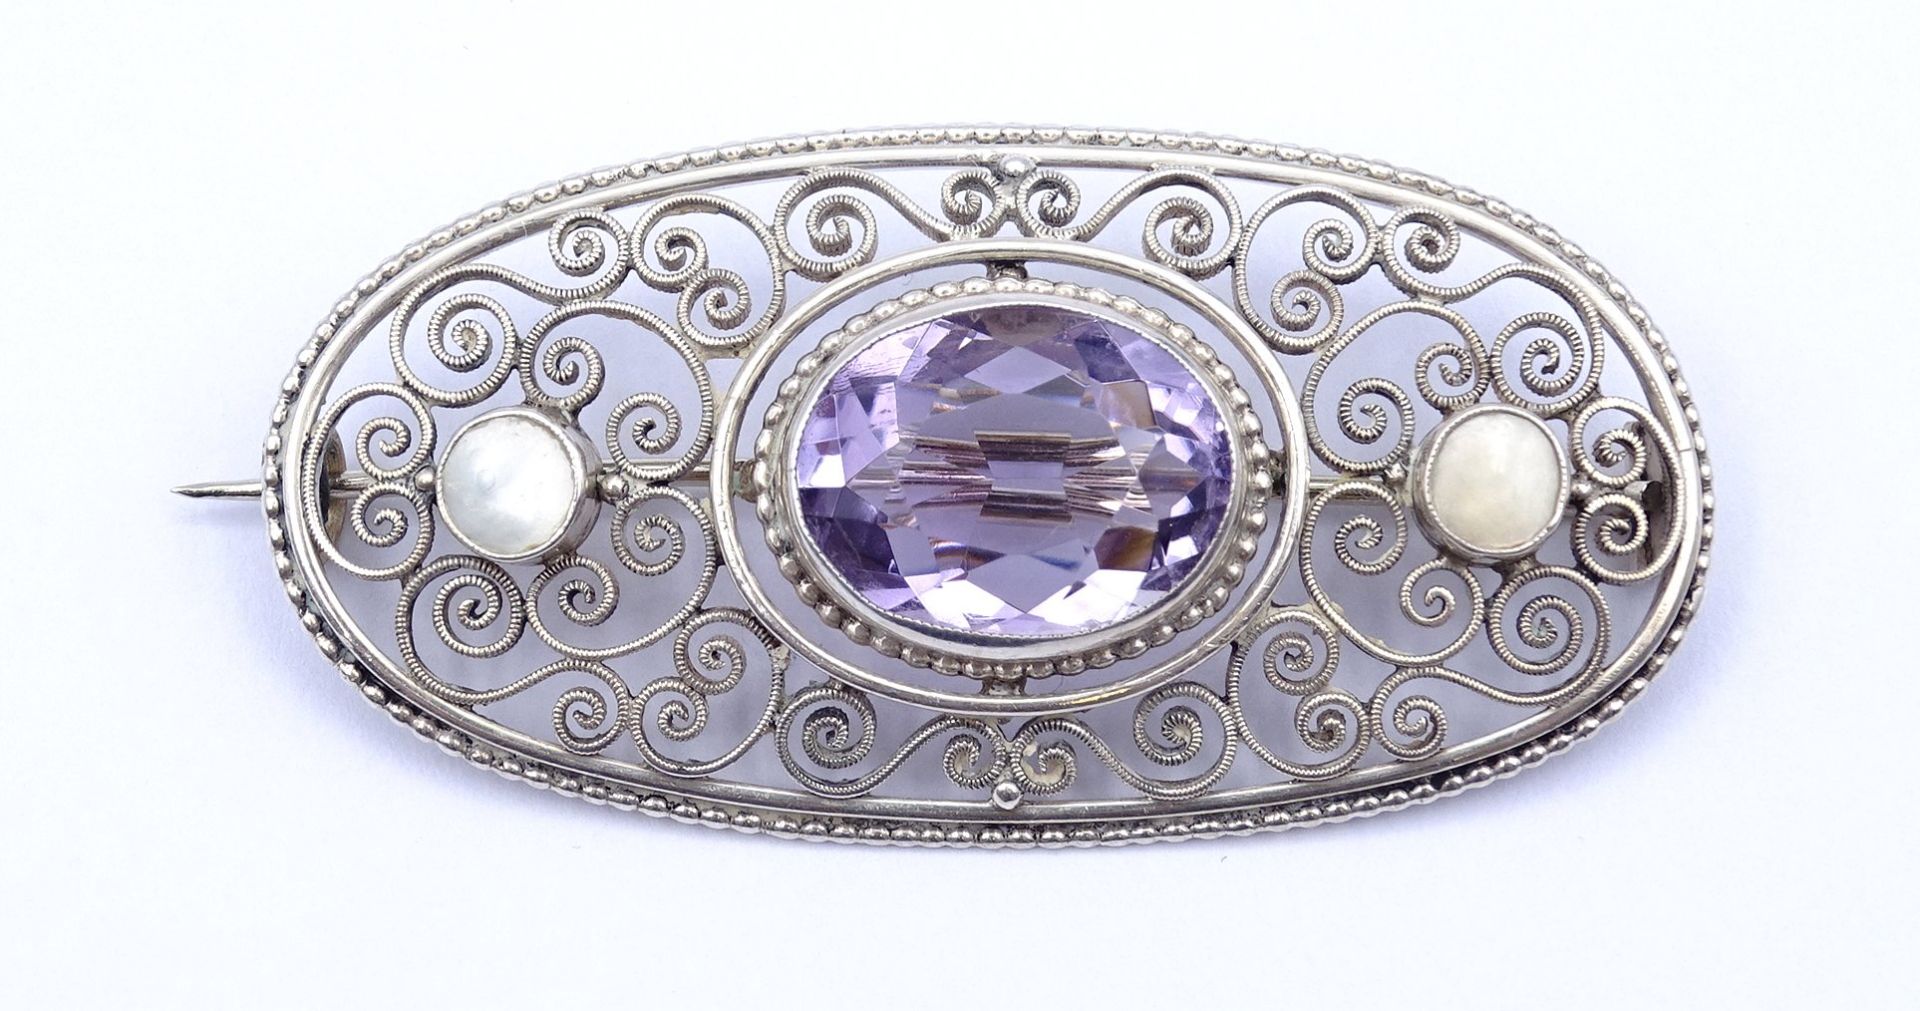 Ovale filigrane Brosche mit Perlmutt und violettem Schmuckstein, Silber 935, 53x26mm, 9,9g. - Bild 2 aus 4